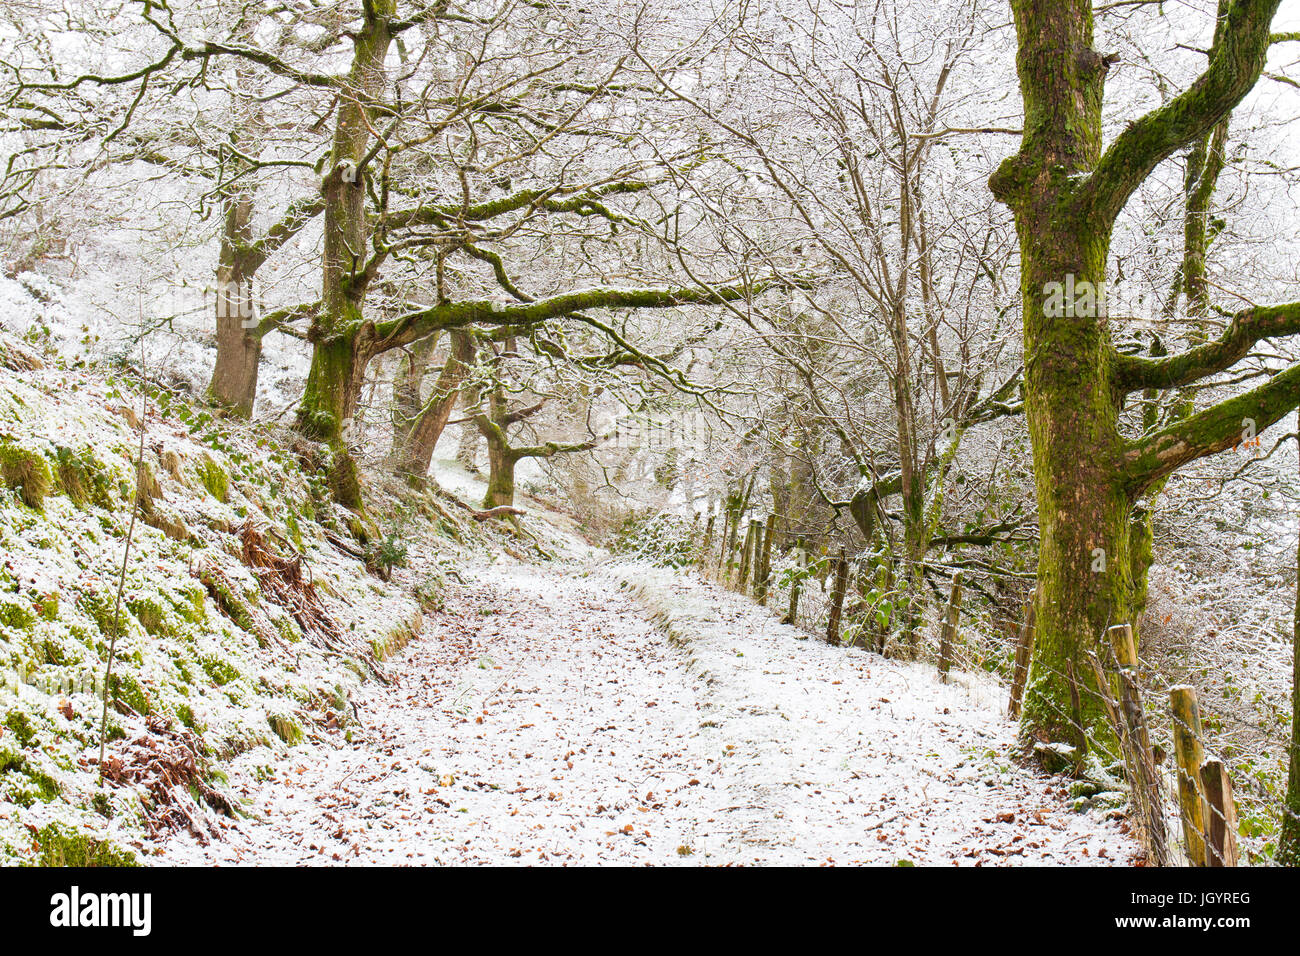 Forêt de chênes après une légère chute de neige. Powys, Pays de Galles. Mars. Banque D'Images